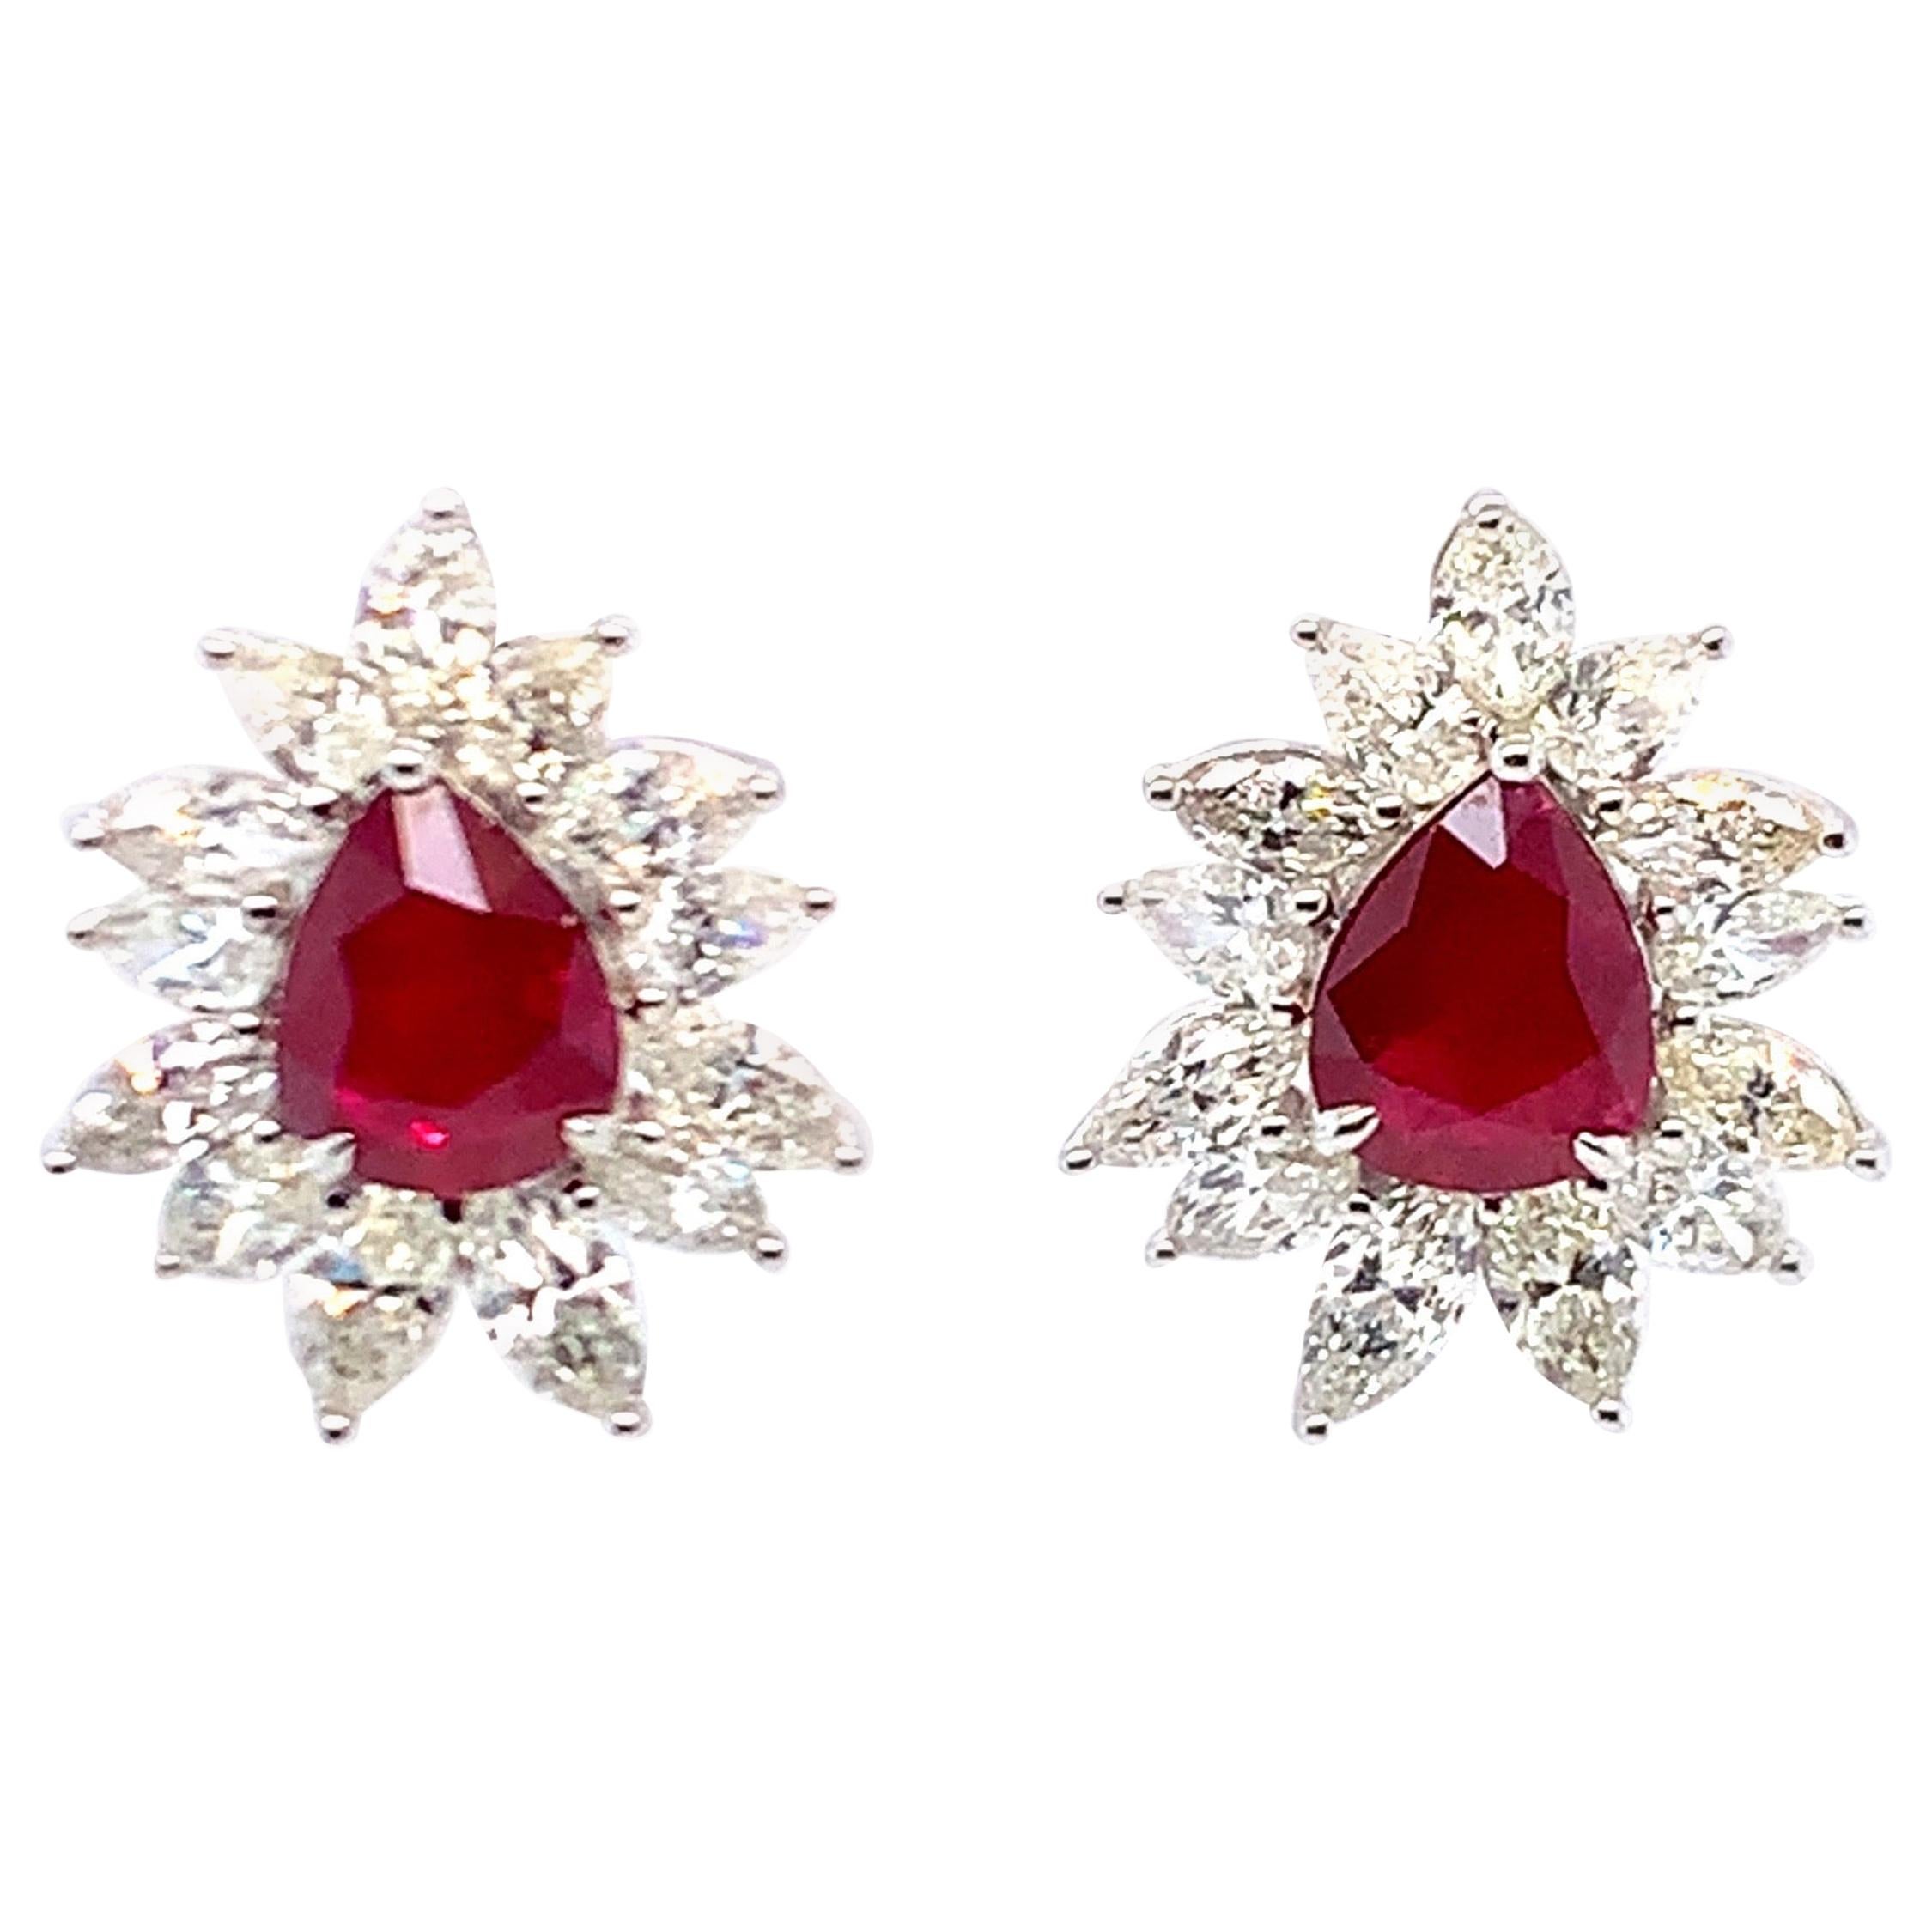 4.62 Carat Ruby Diamond Stud Earrings in 14K White Gold